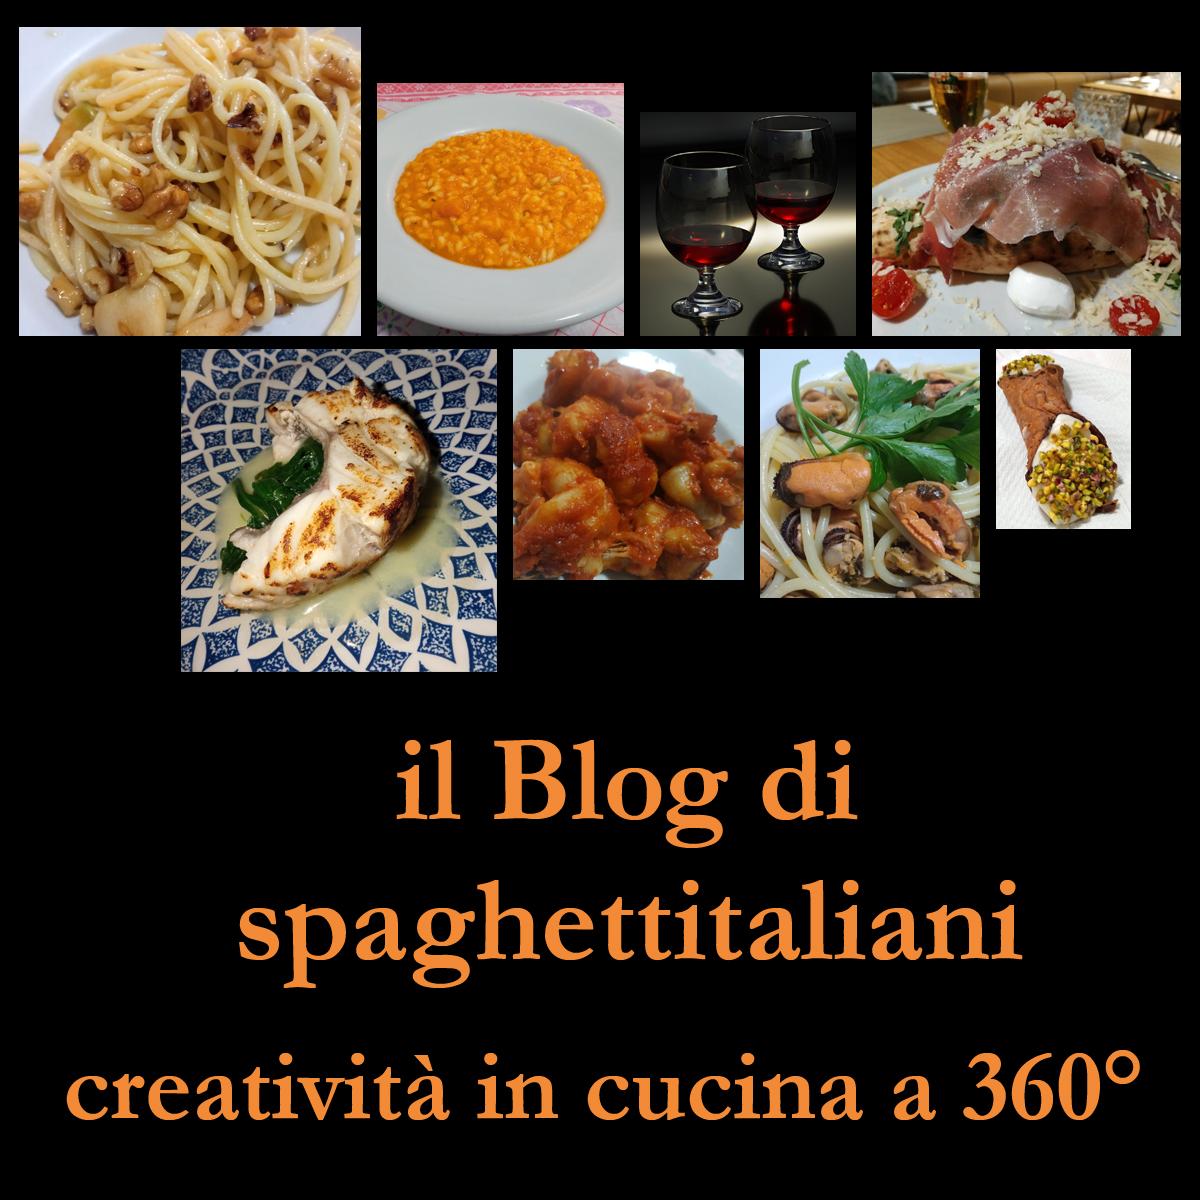 Il Blog di spaghettitaliani